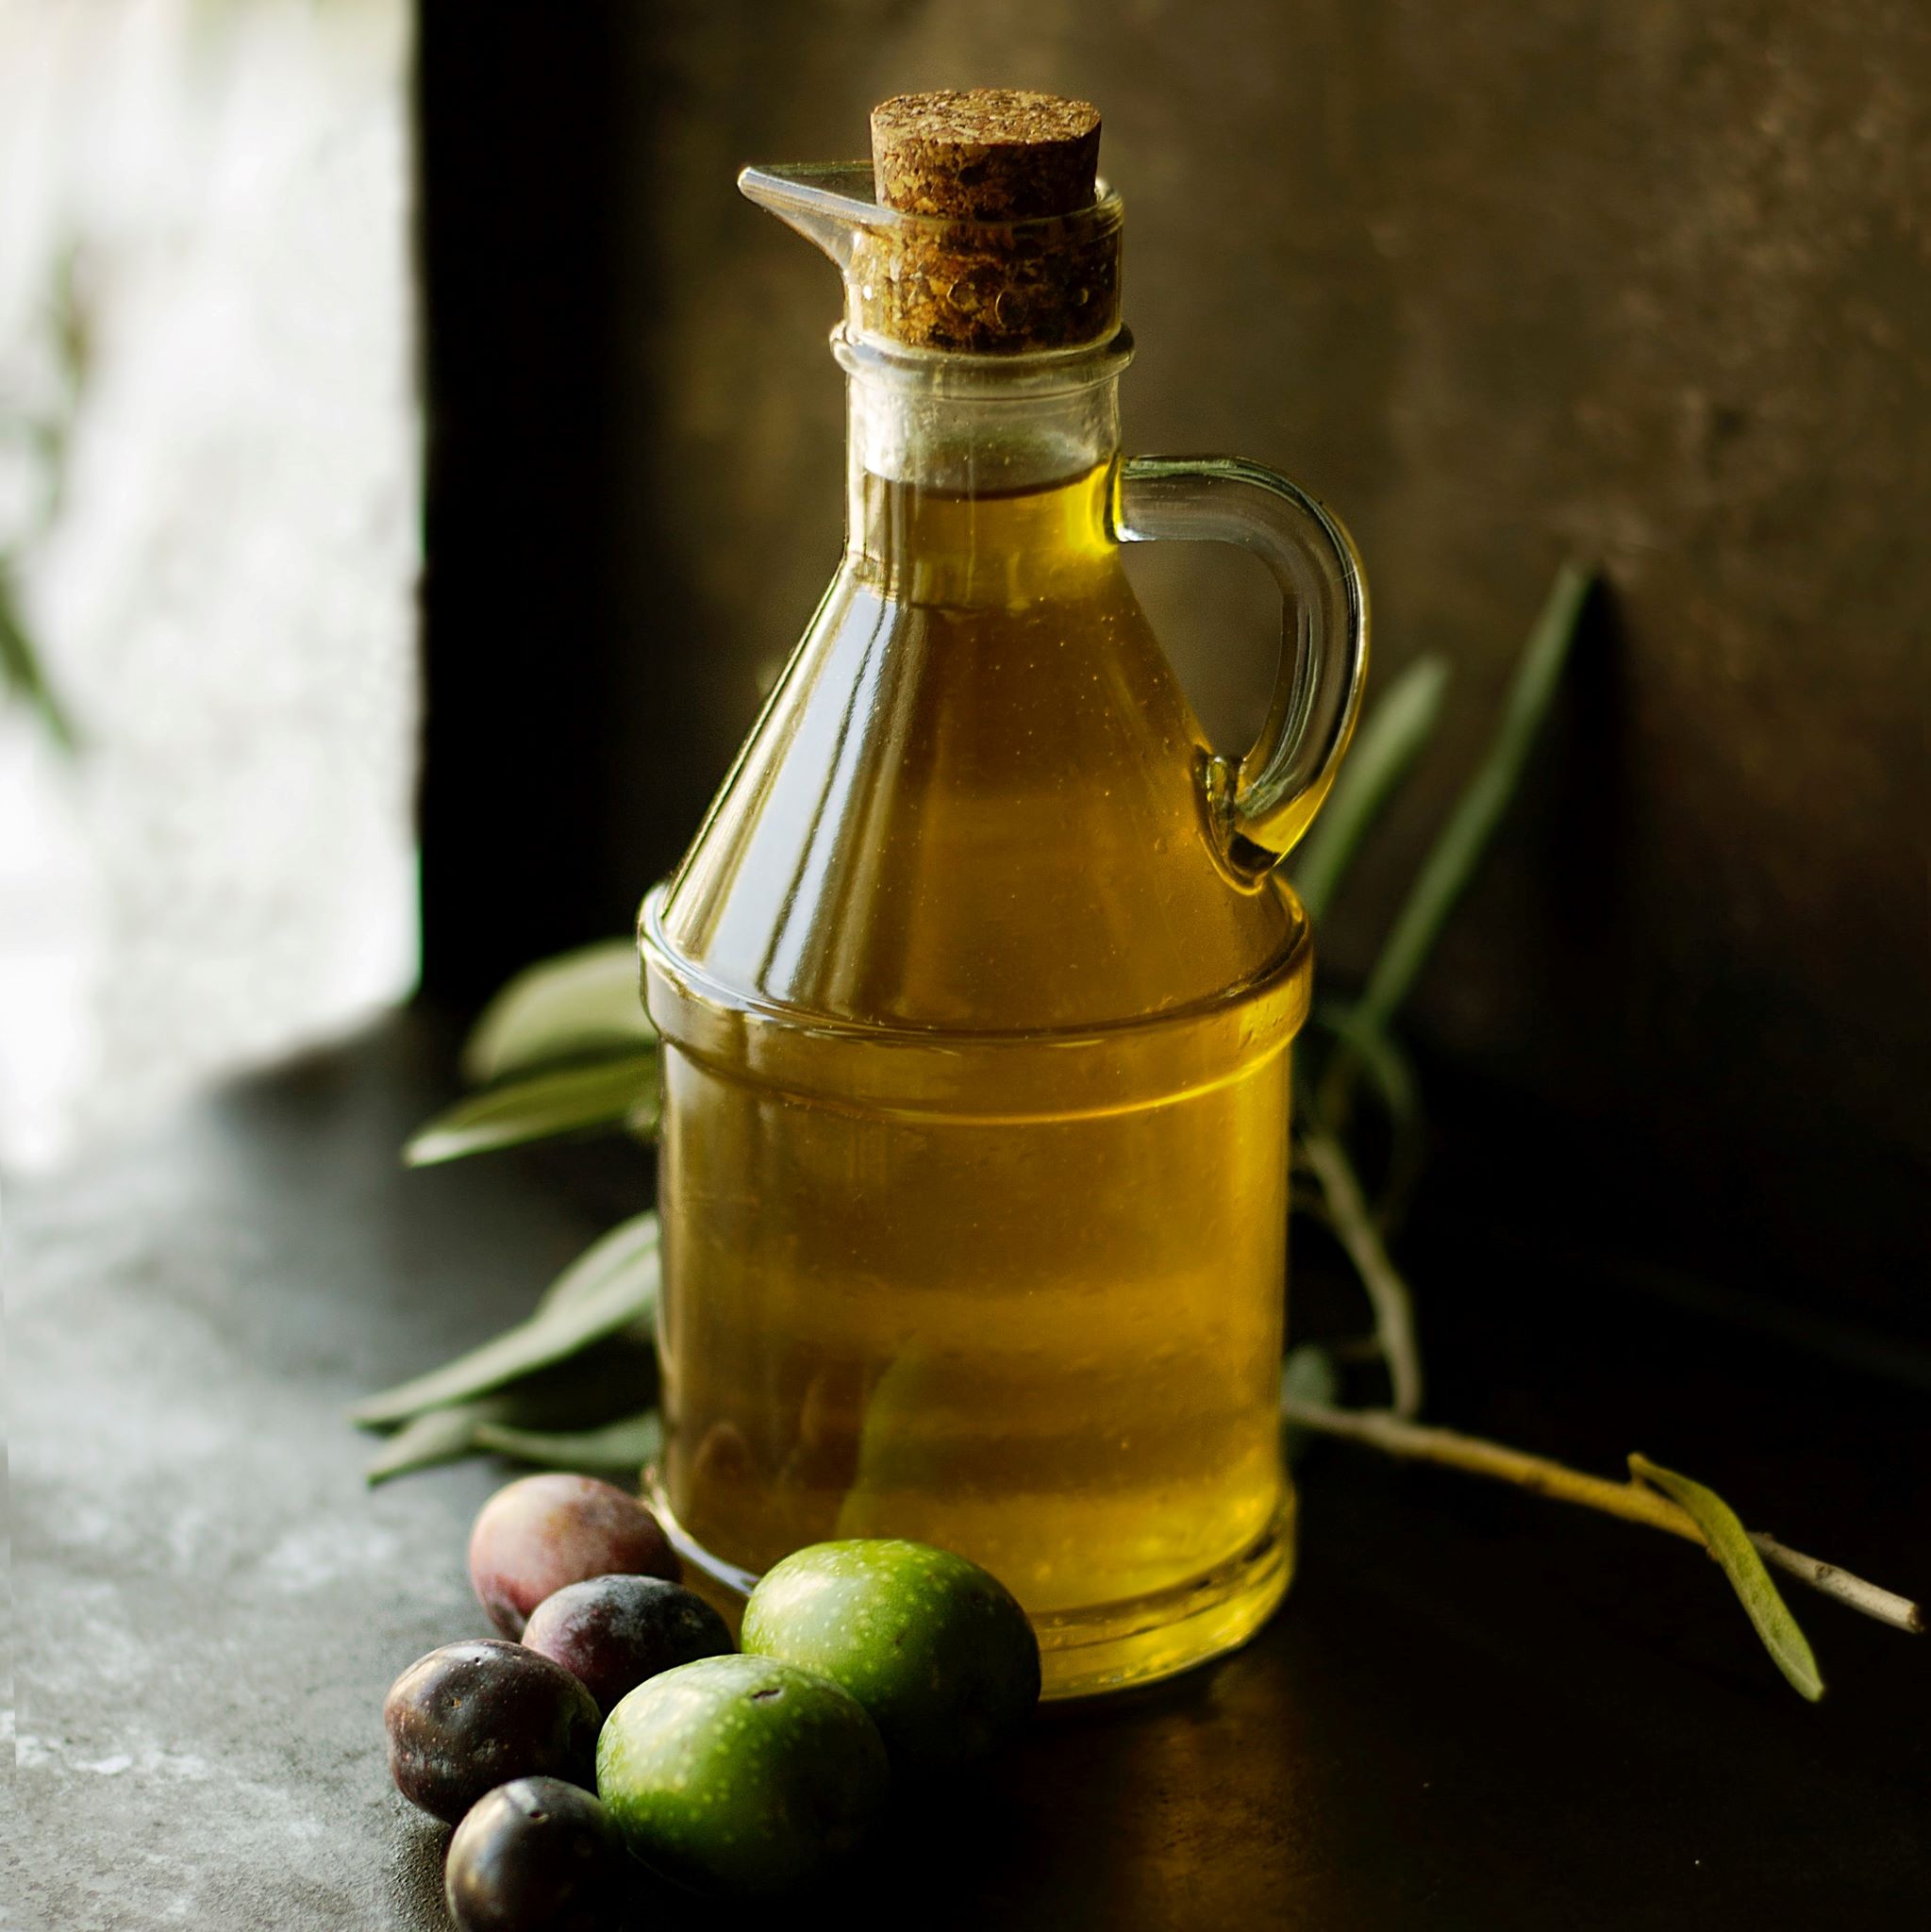 Lemon flavored Olive Oil